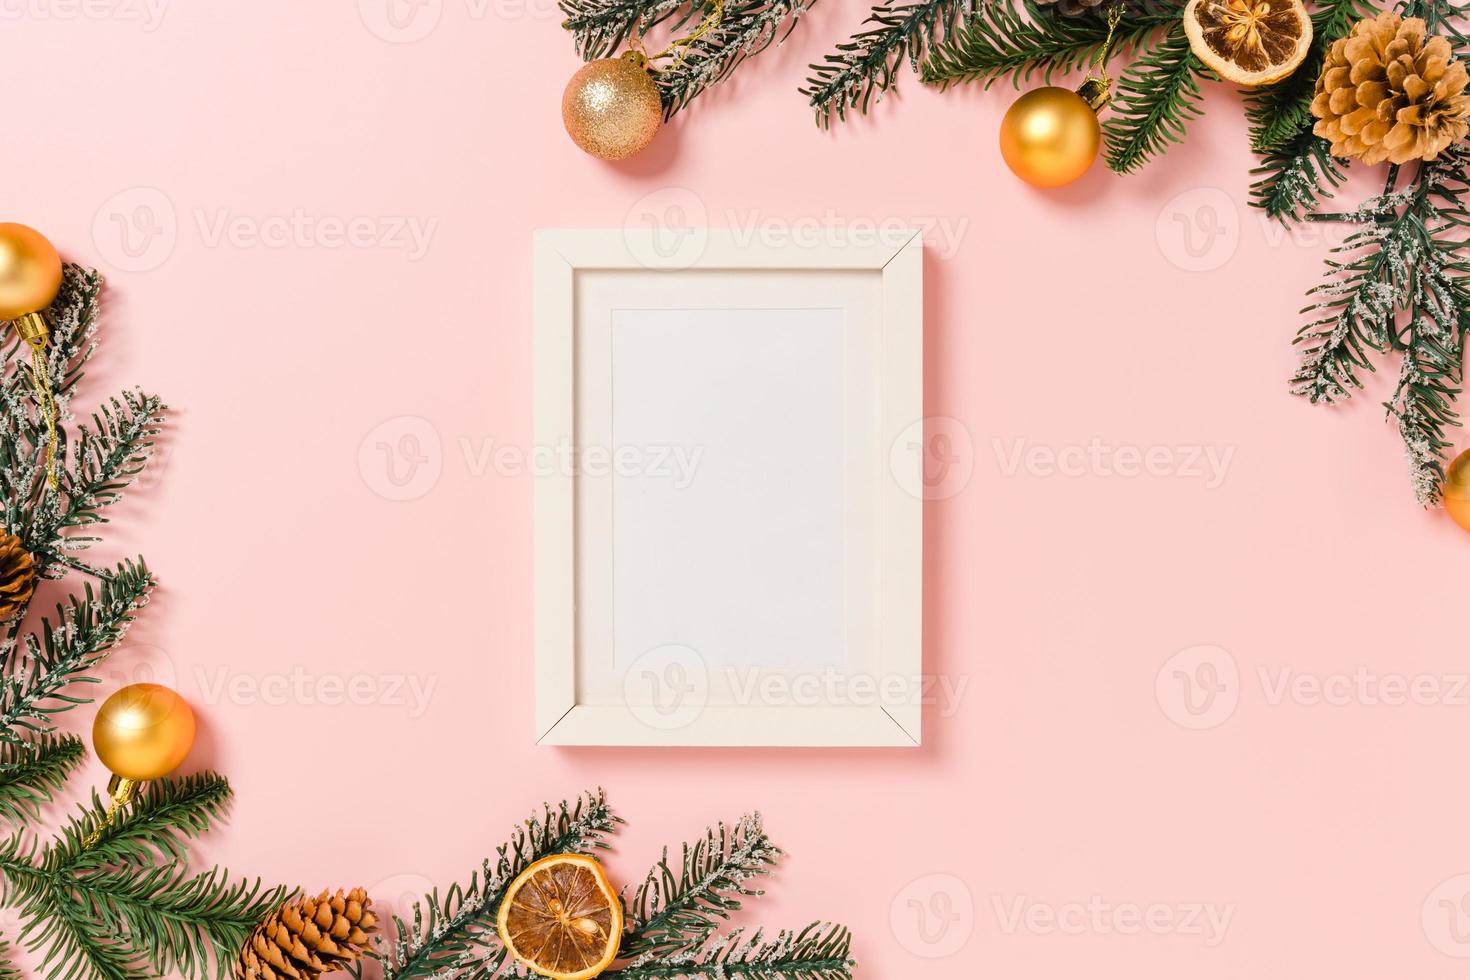 minimale creatieve platte lay van winterkerst traditionele compositie en nieuwjaarsvakantieseizoen. bovenaanzicht mockup zwarte fotolijsten voor tekst op roze achtergrond. bespotten en kopiëren van ruimtefotografie. foto